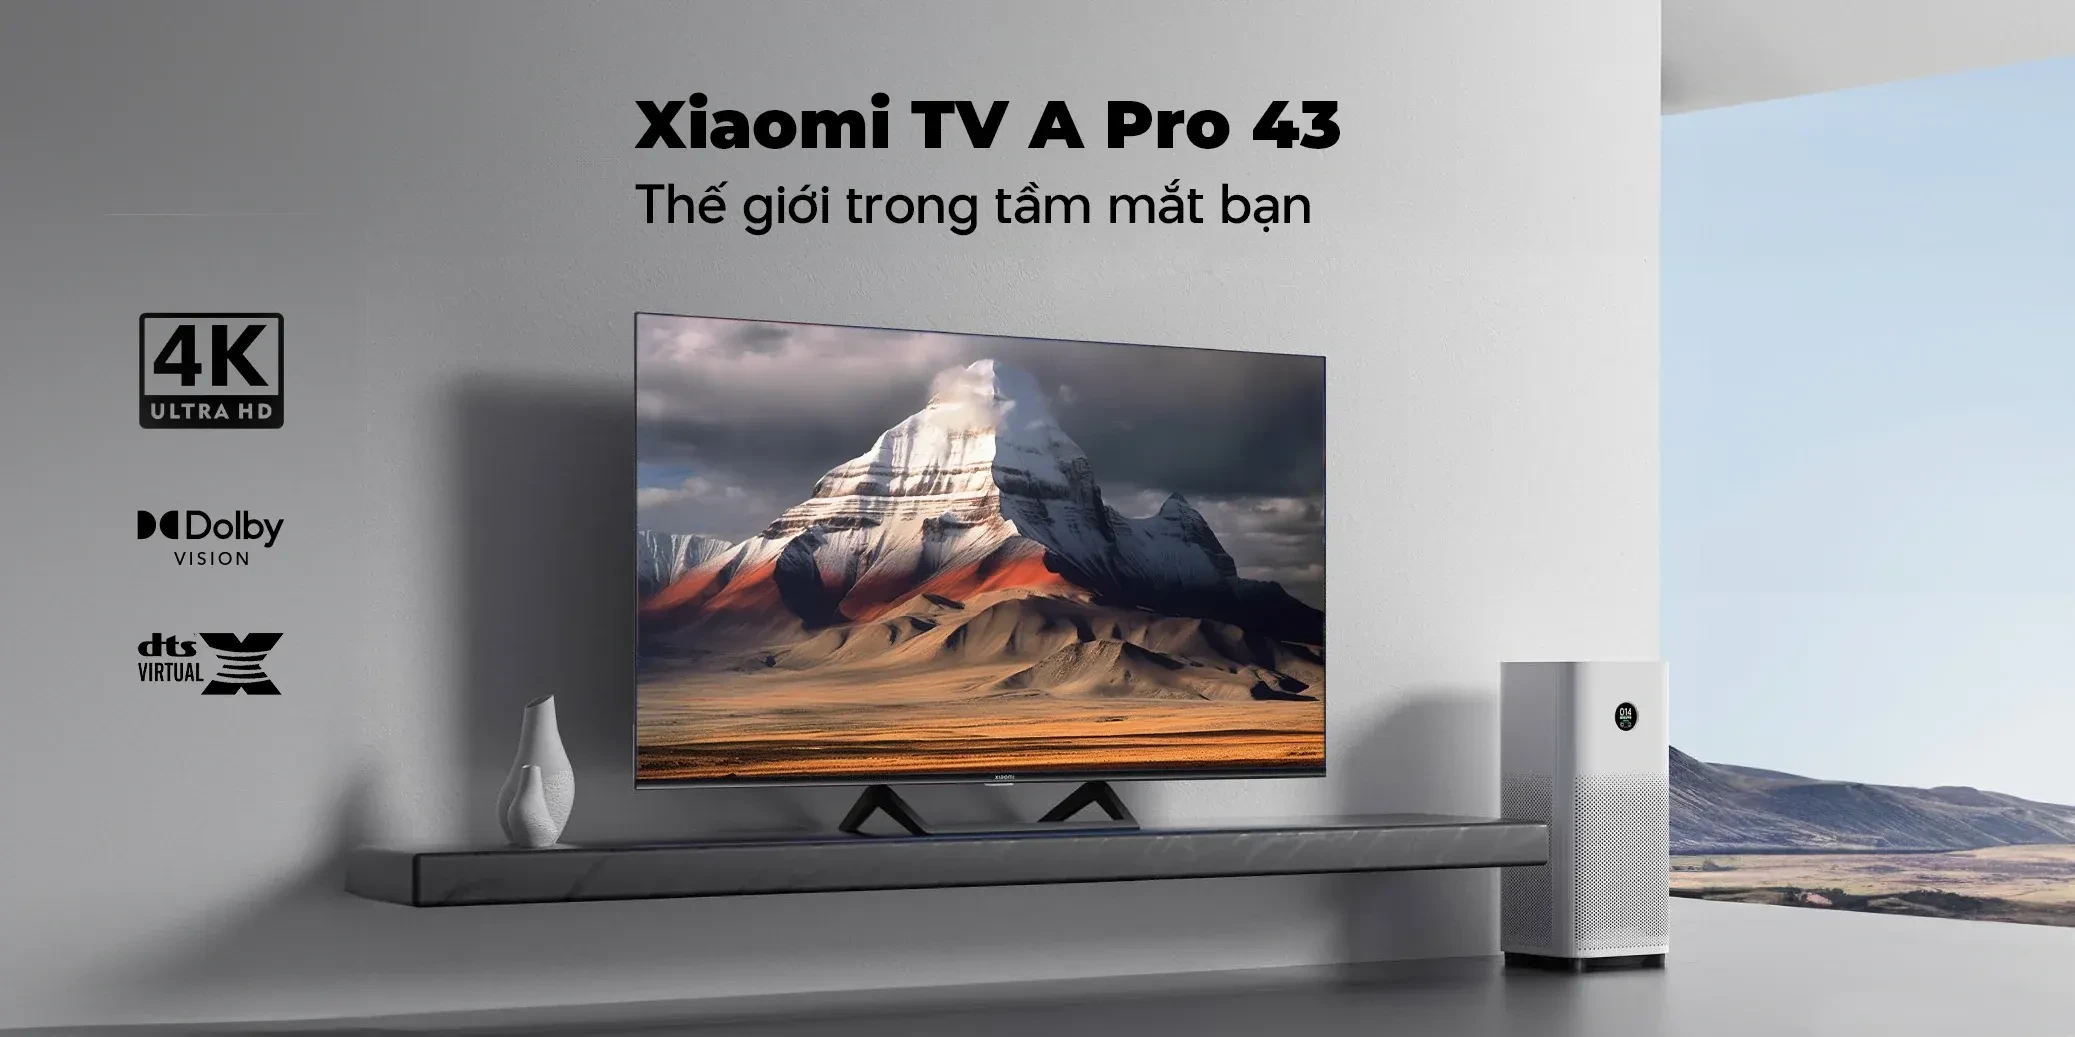 Có nên chọn mua Tivi xiaomi 43 inch giá rẻ Thái Nguyên không?